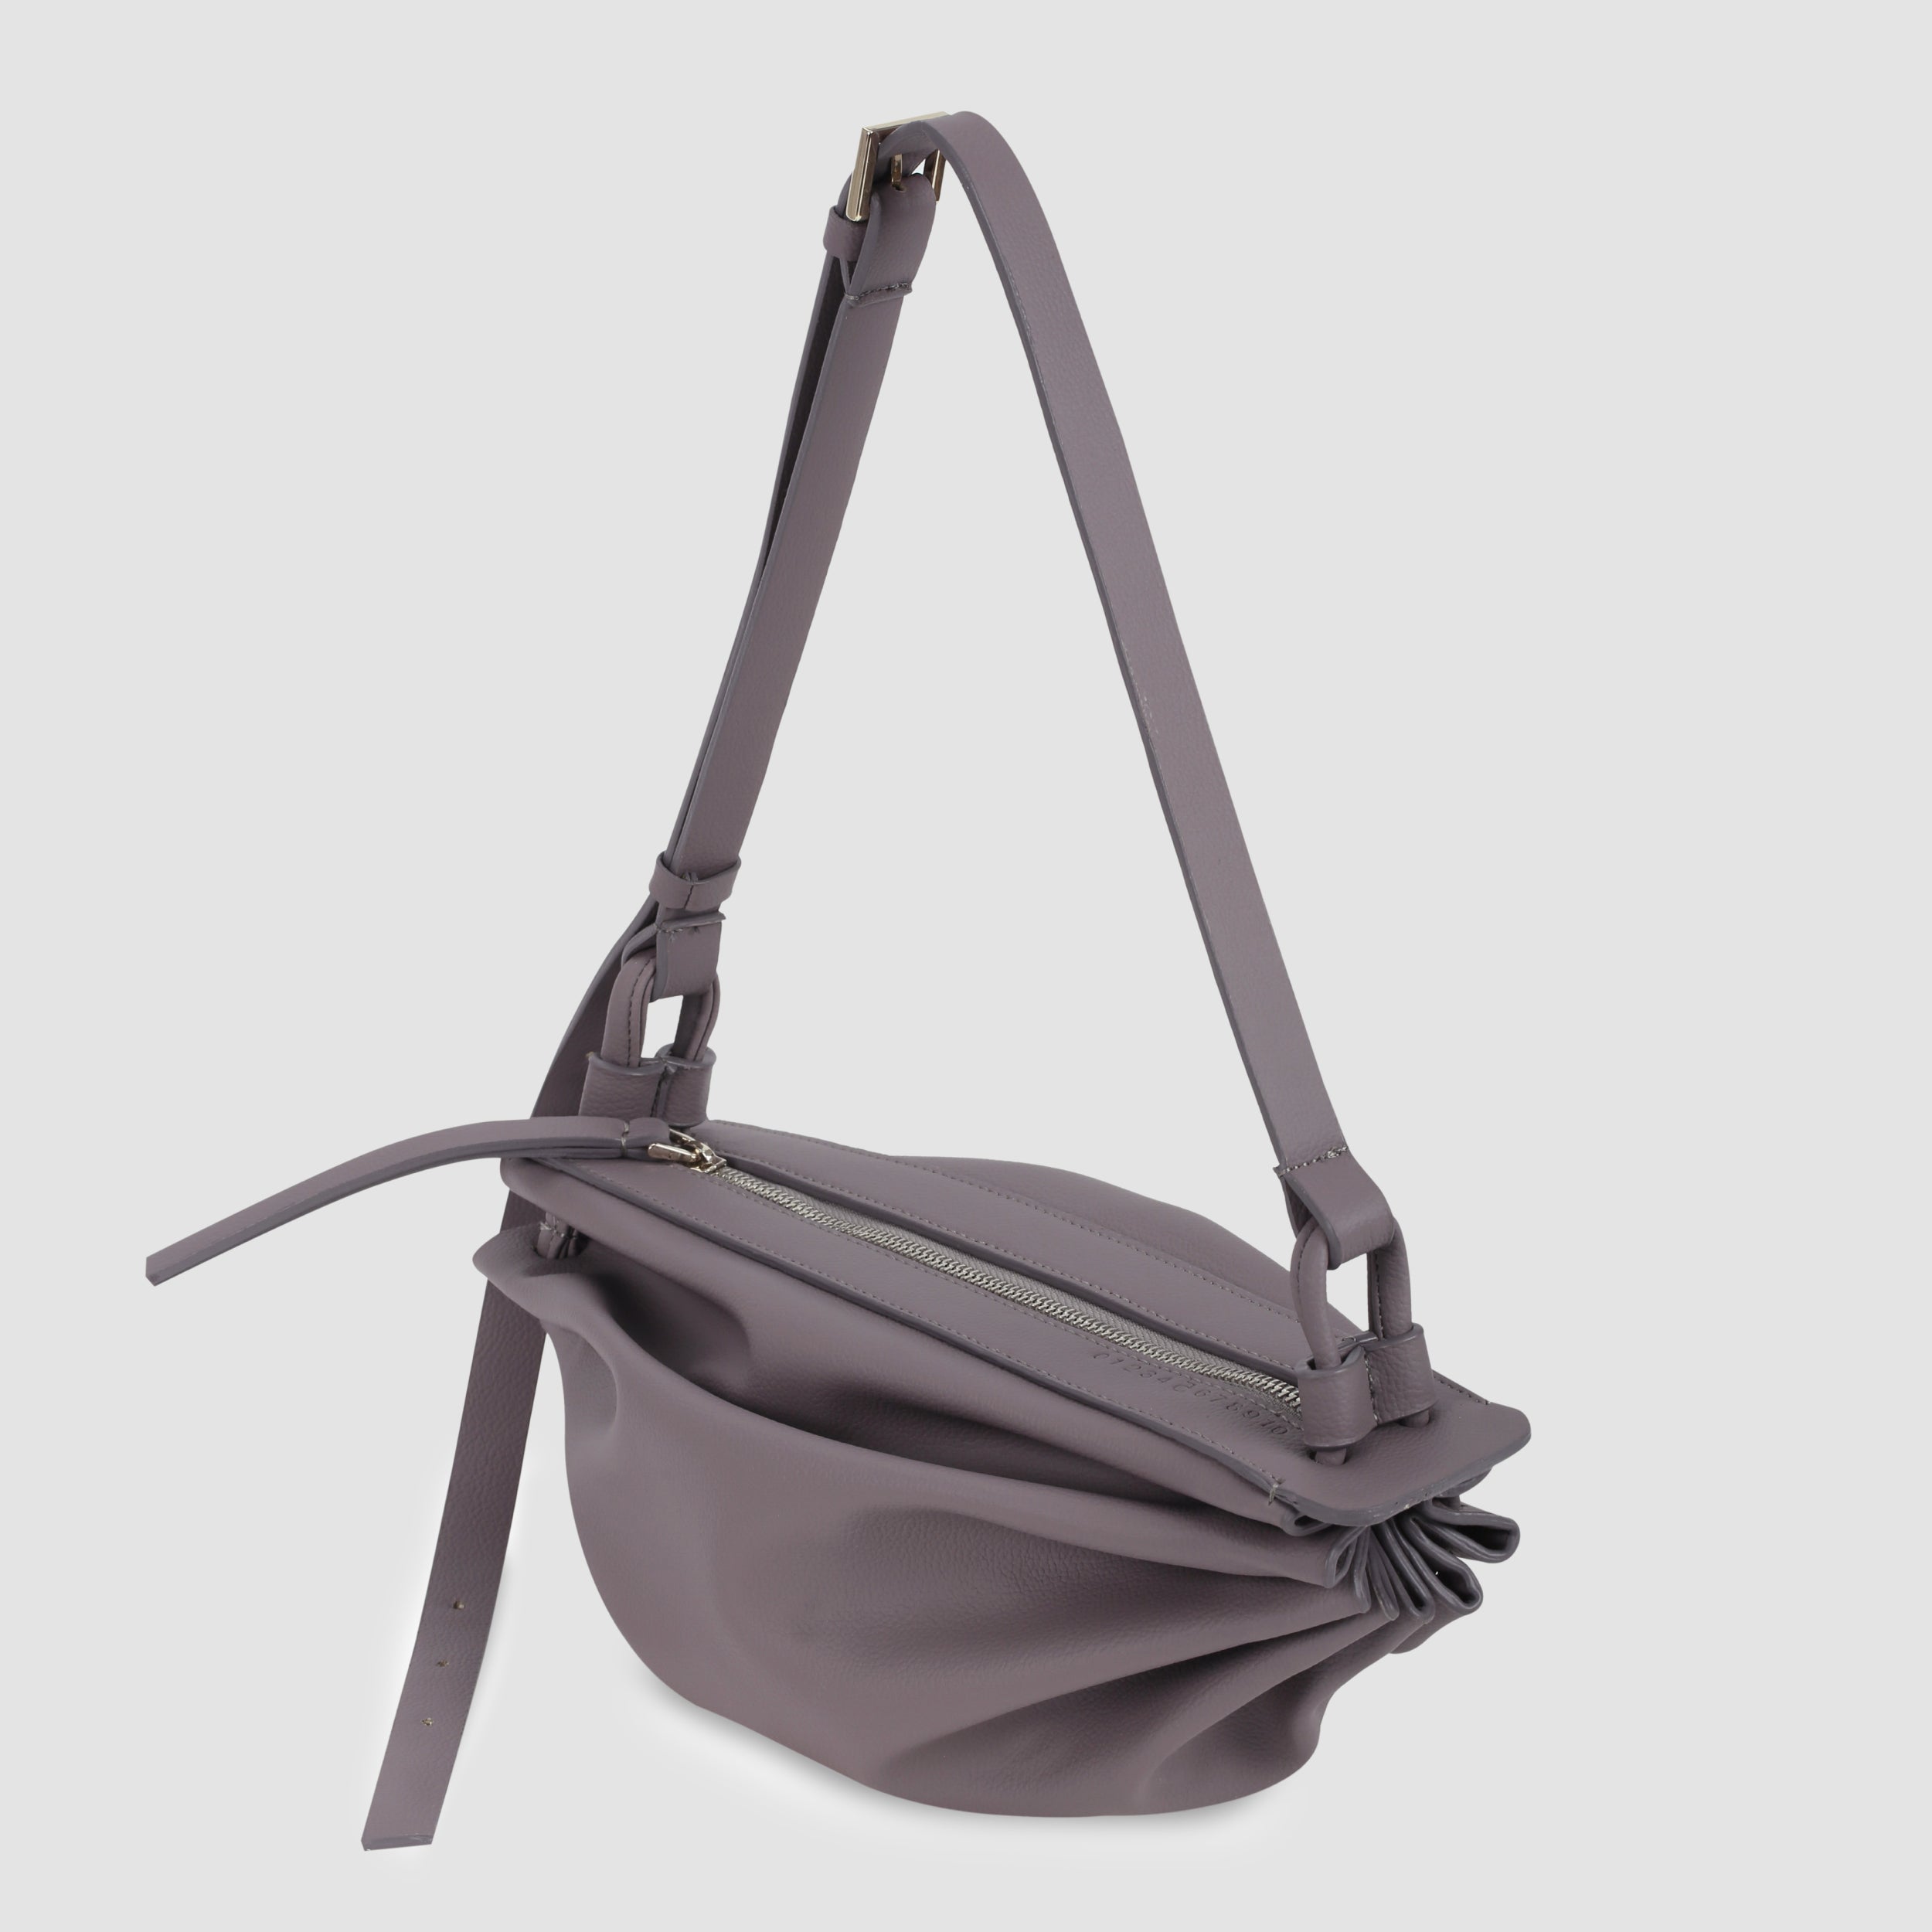 Túi xách BOAT size lớn (M) màu tím khói